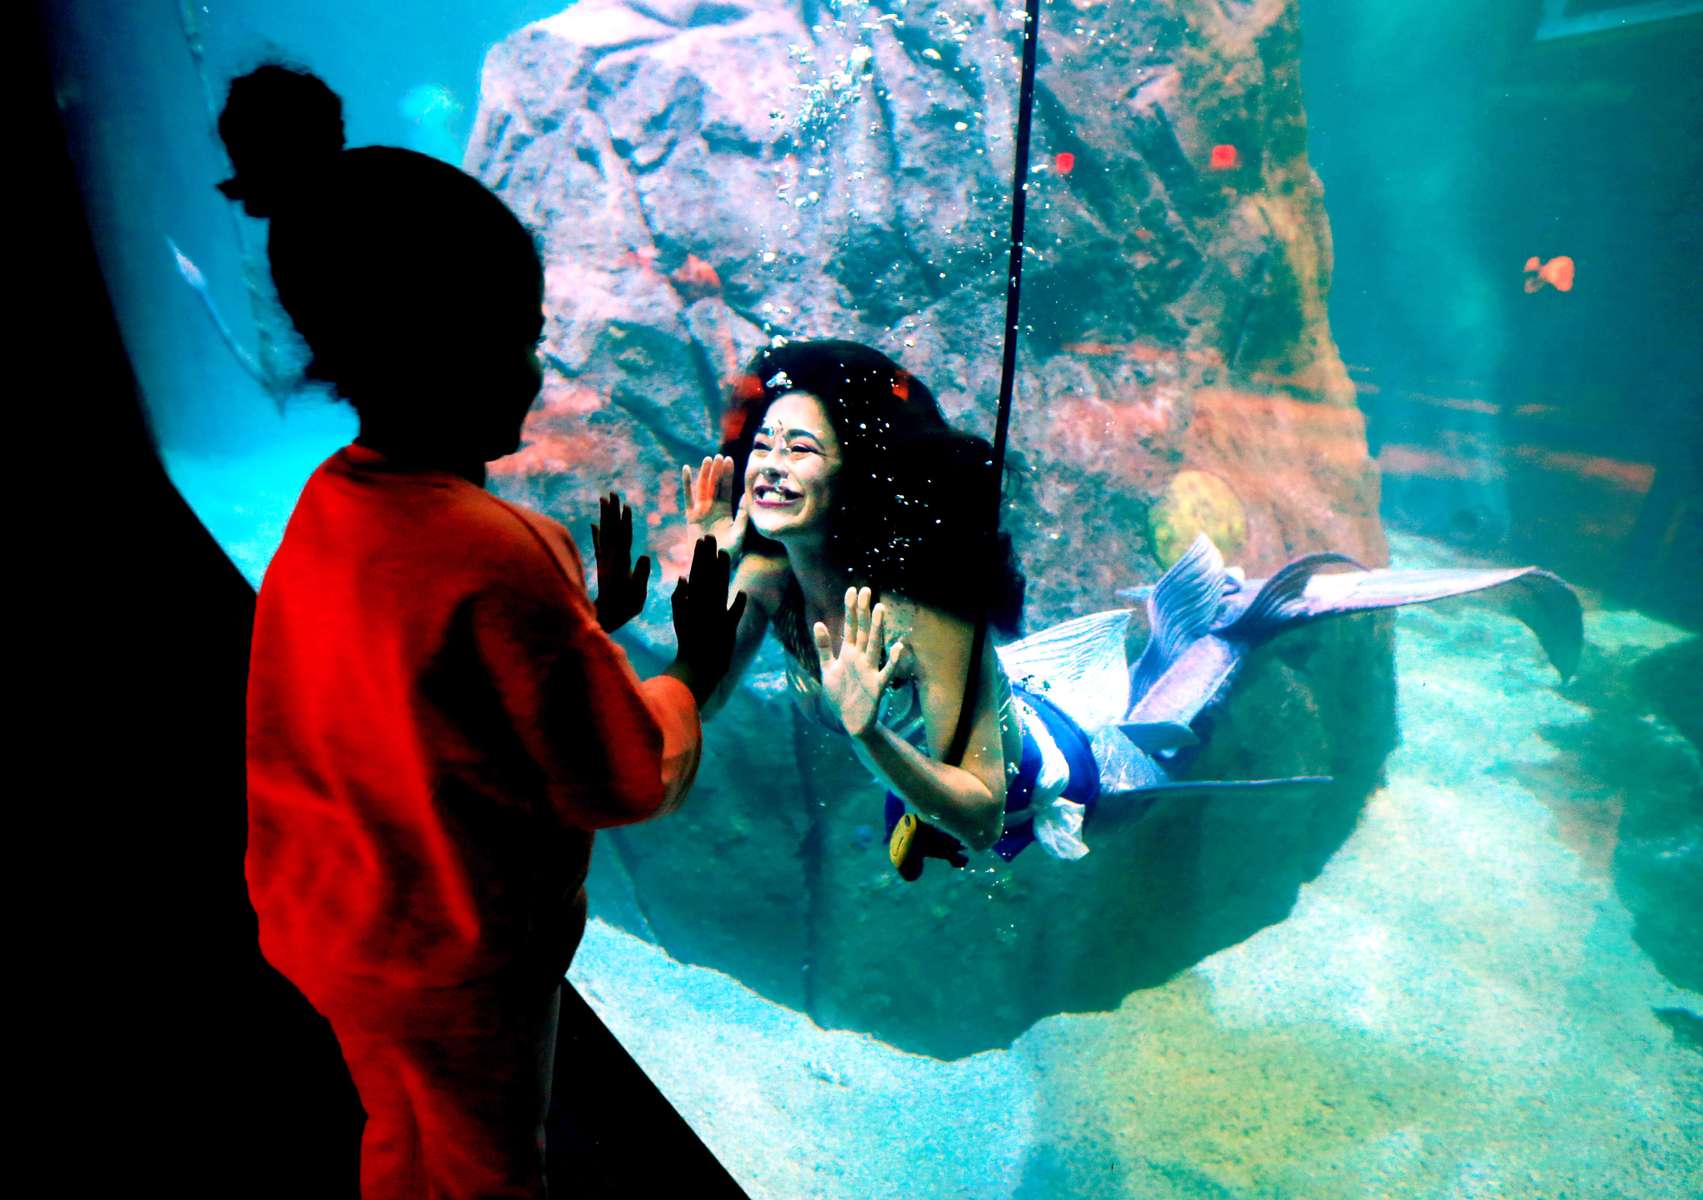 Mermaids arrived at the Adventure Aquarium in Camden.